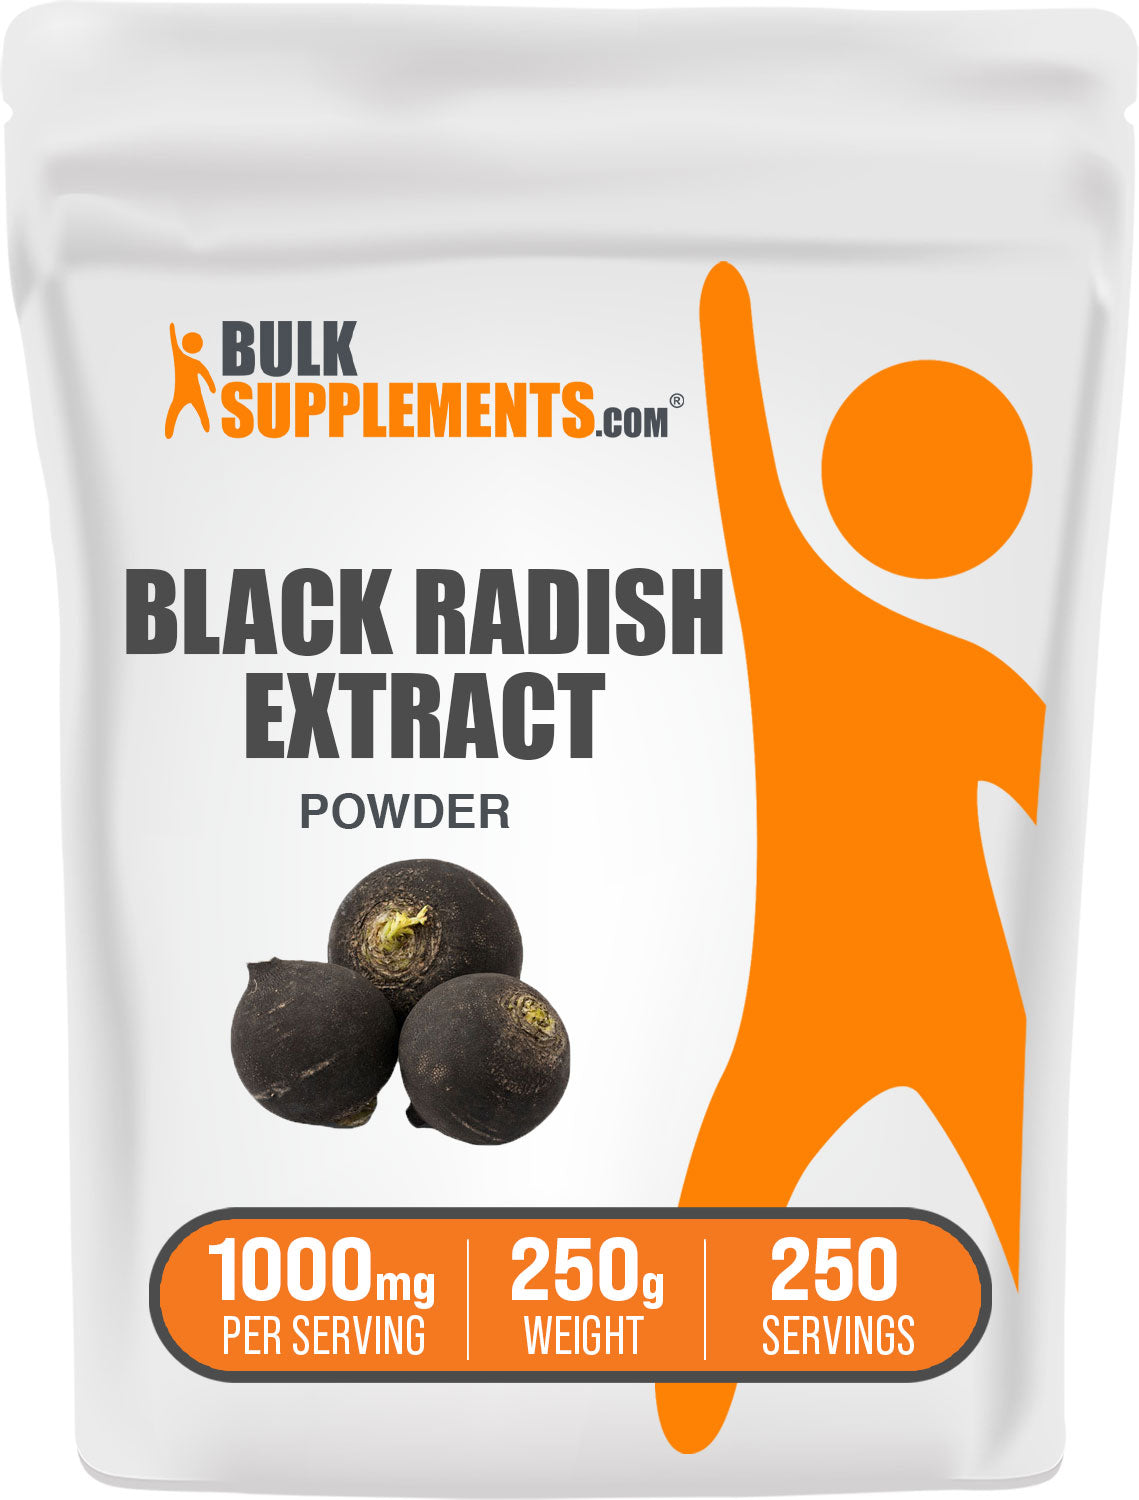 250g of black radish powder